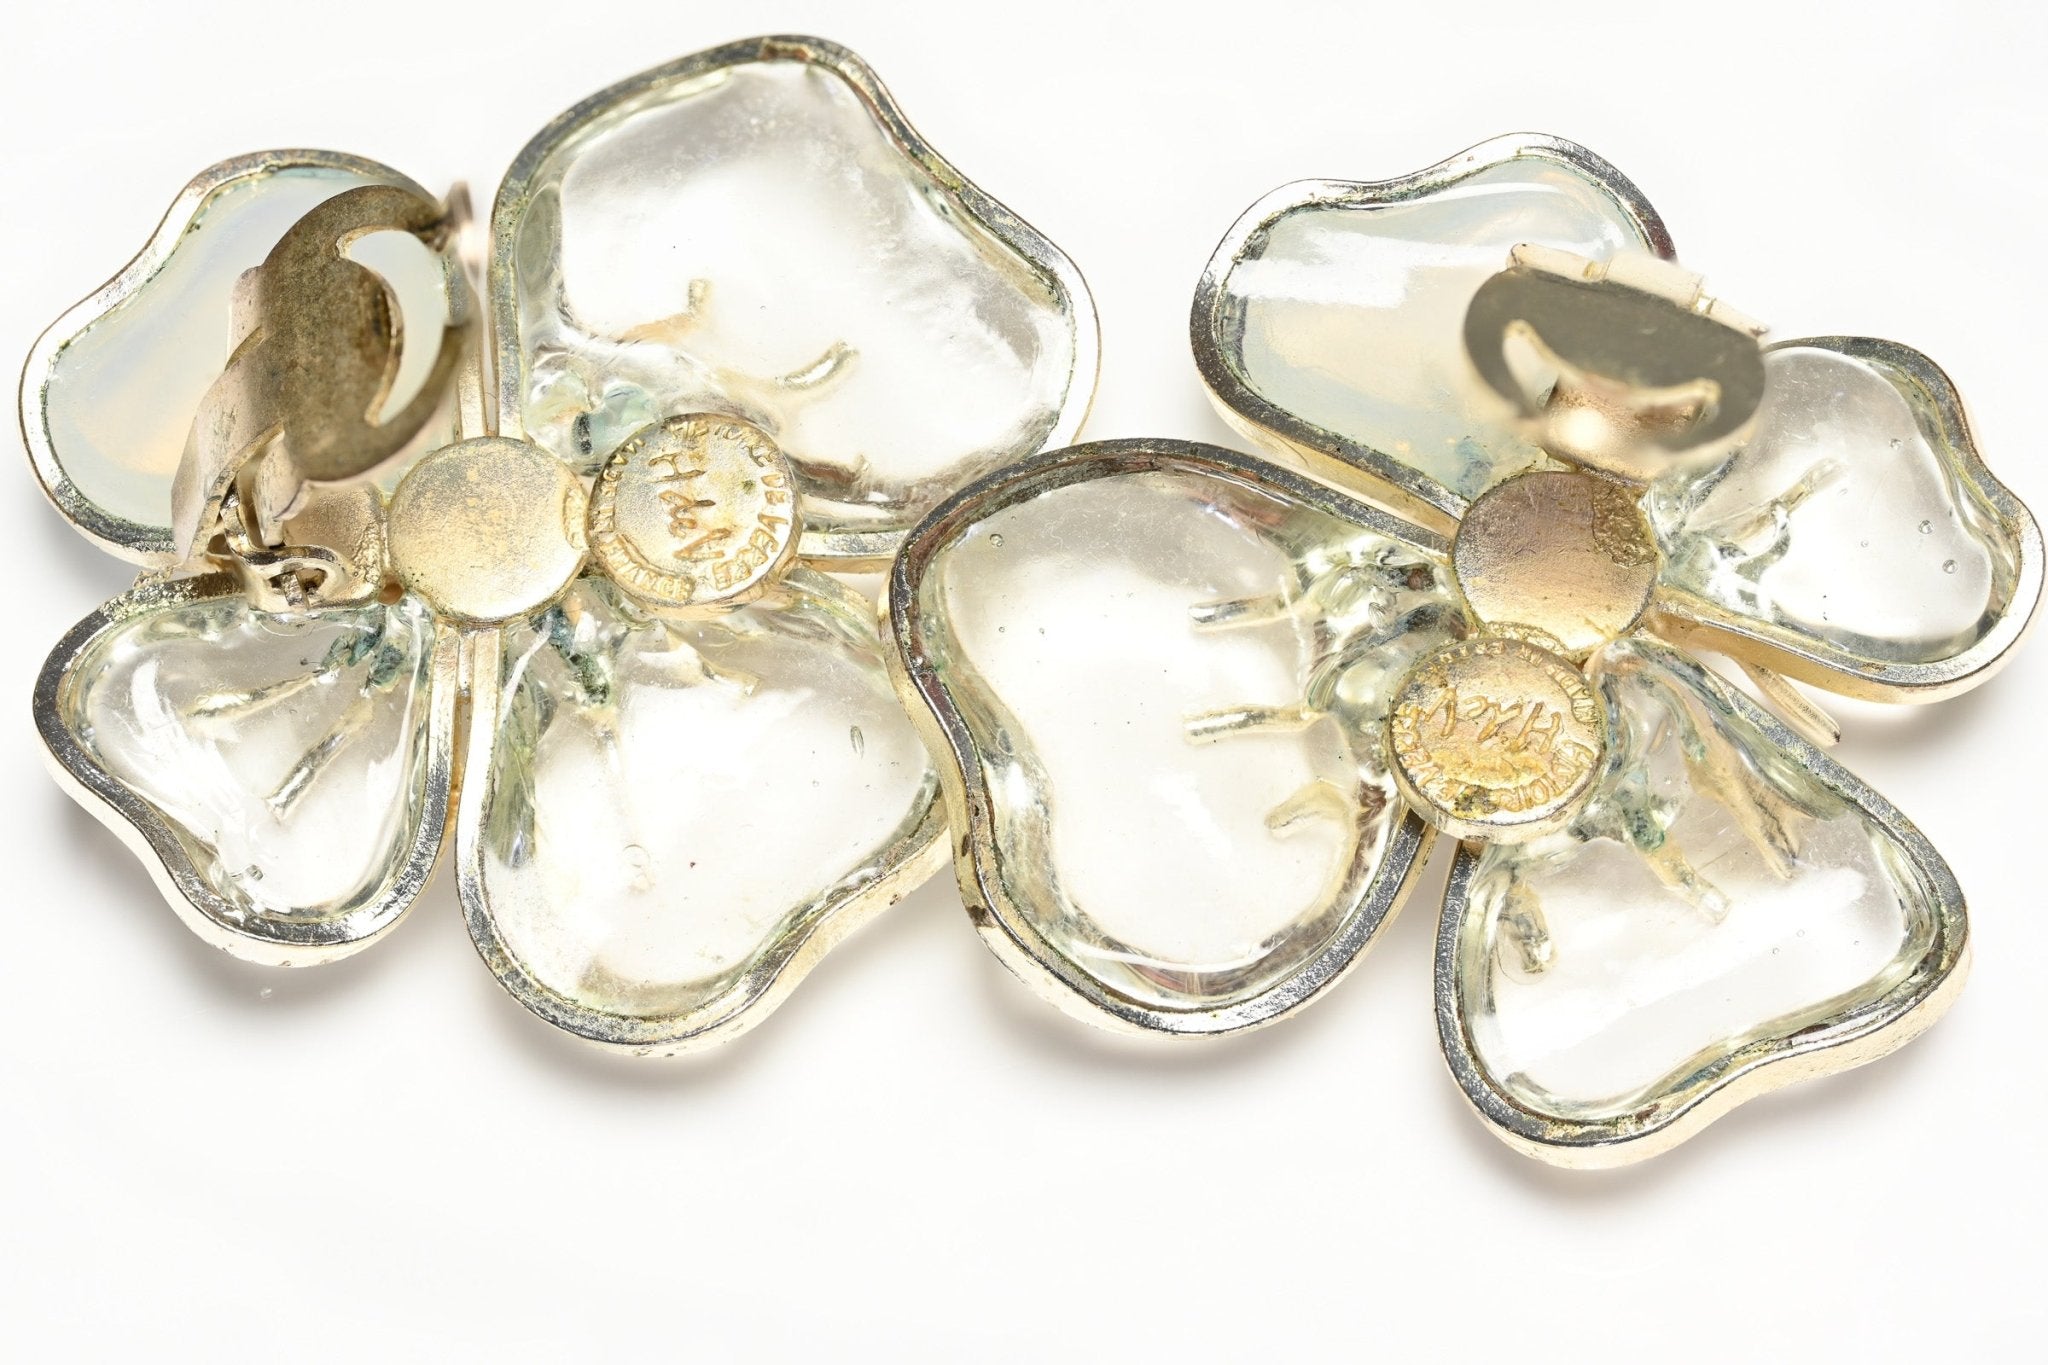 Vintage Histoire de Verre Paris Gripoix Clear Poured Glass Camellia Earrings